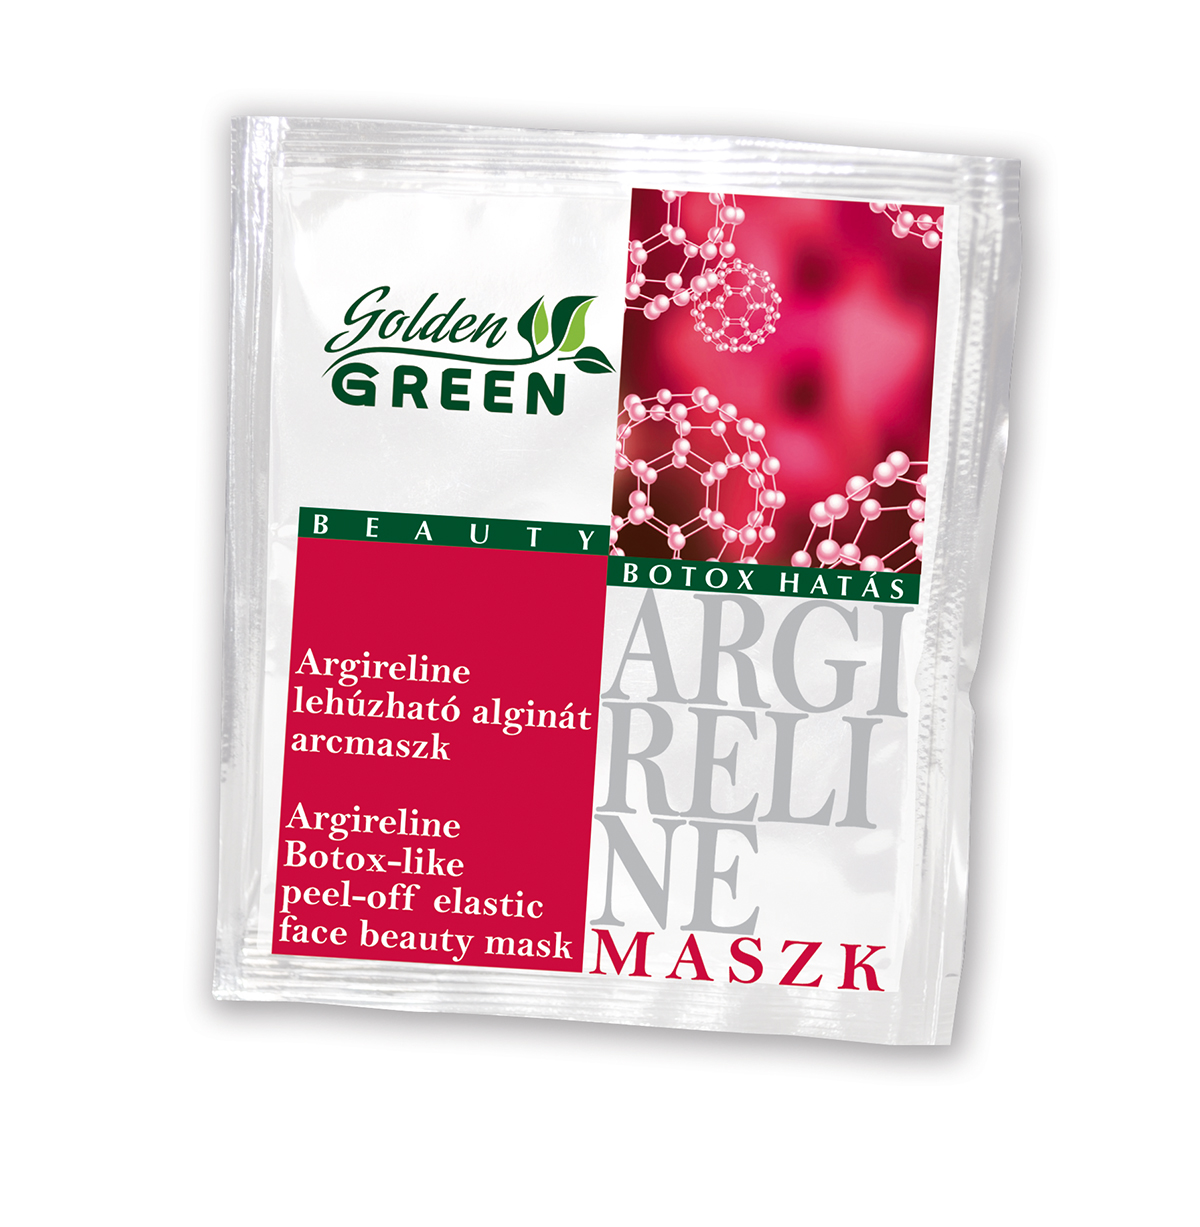 Golden GREEN Argireline botox-hatású lehúzható alginát pormaszk 6 g